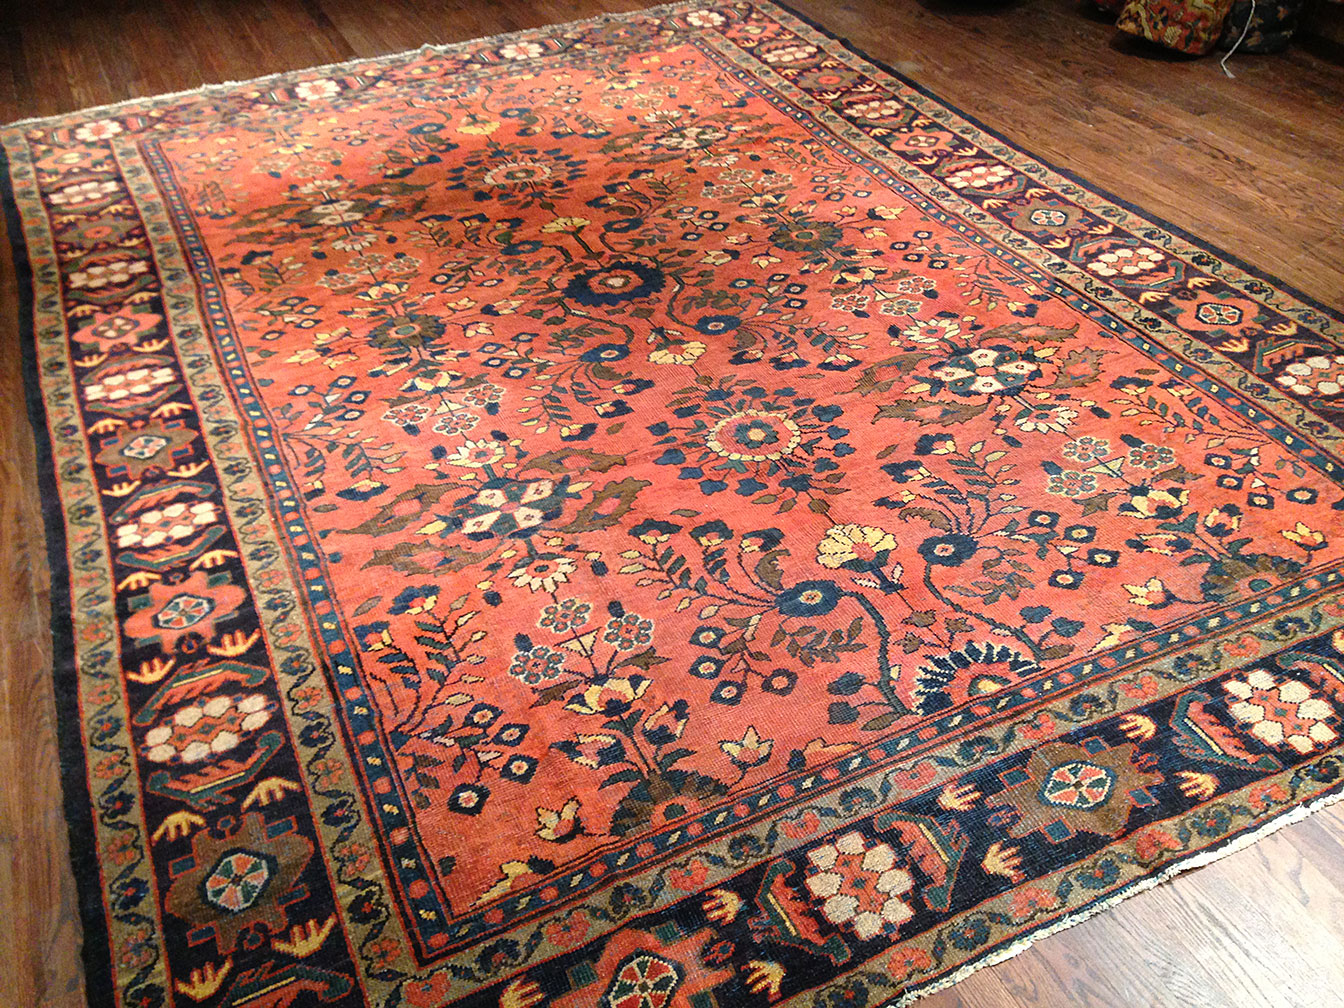 Antique mahal Carpet - # 50106